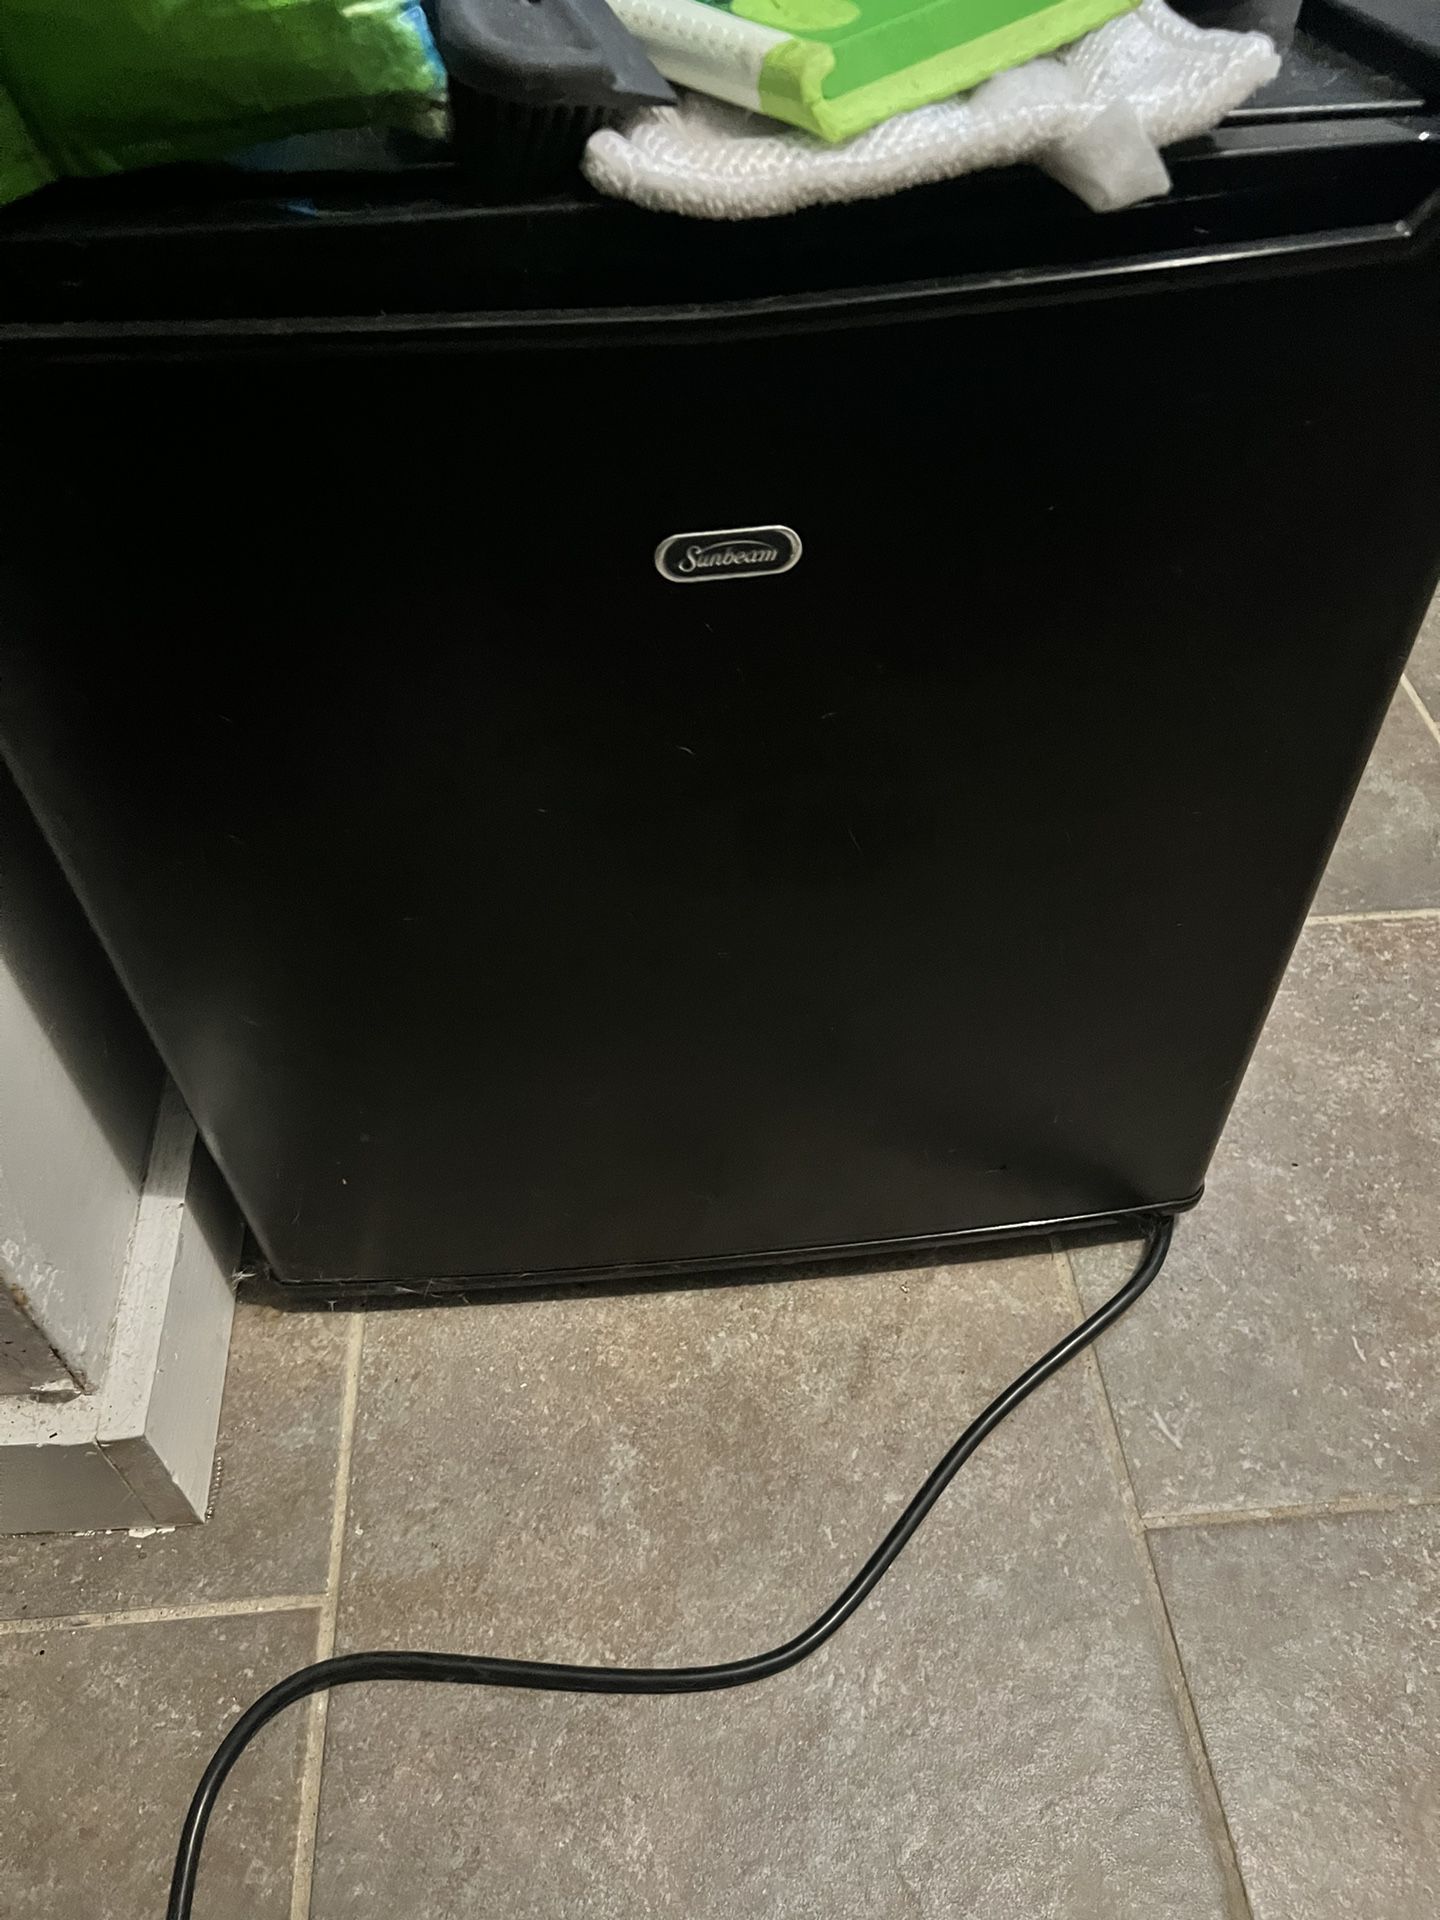 Black Sunbeam Mini-fridge